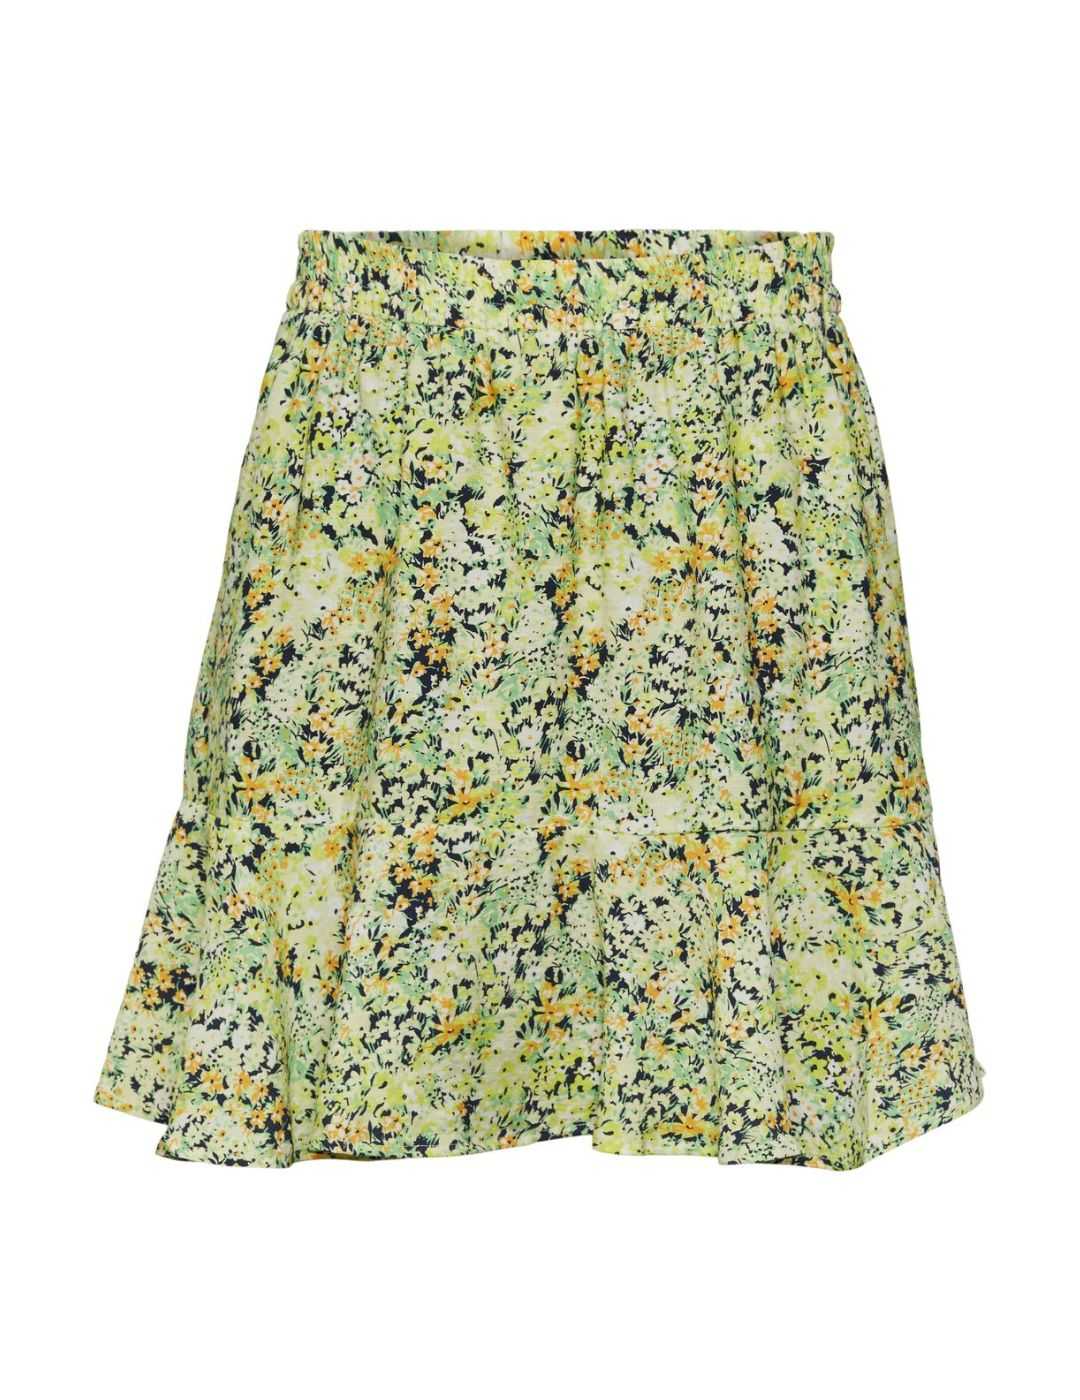 Minifalda verde estampada Pieces | Bicos de Fío